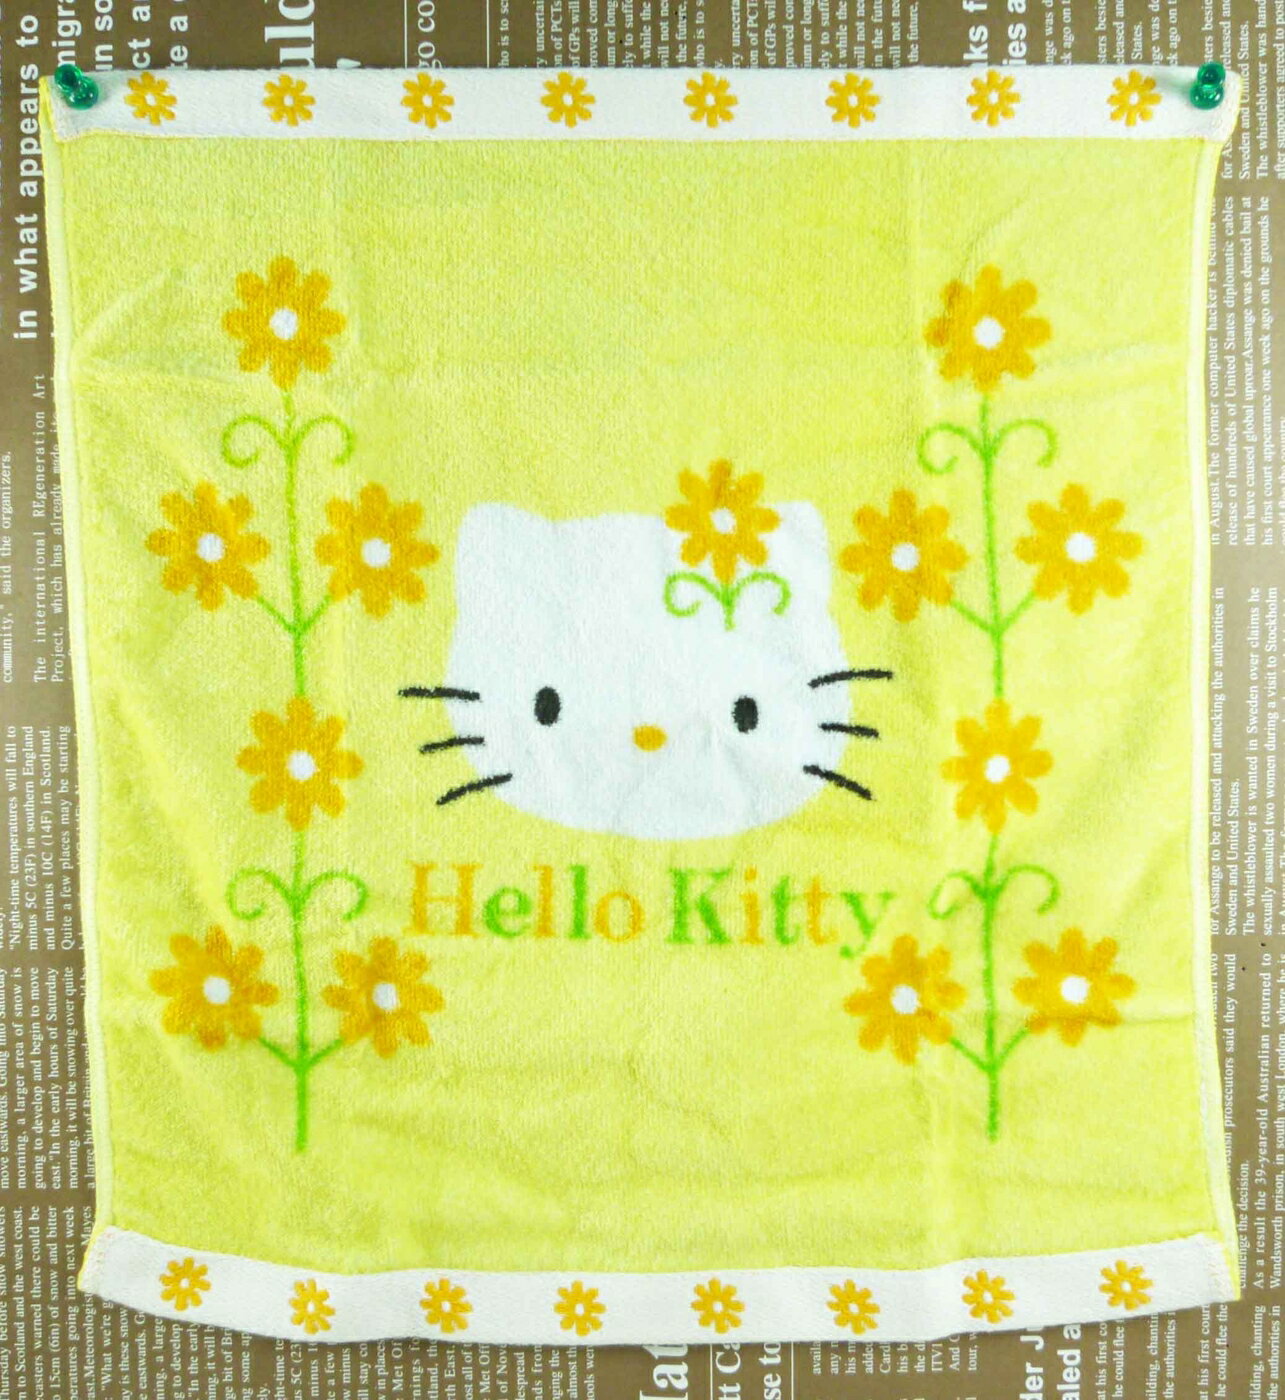 【震撼精品百貨】Hello Kitty 凱蒂貓 大方巾 黃瑪格麗特【共1款】 震撼日式精品百貨